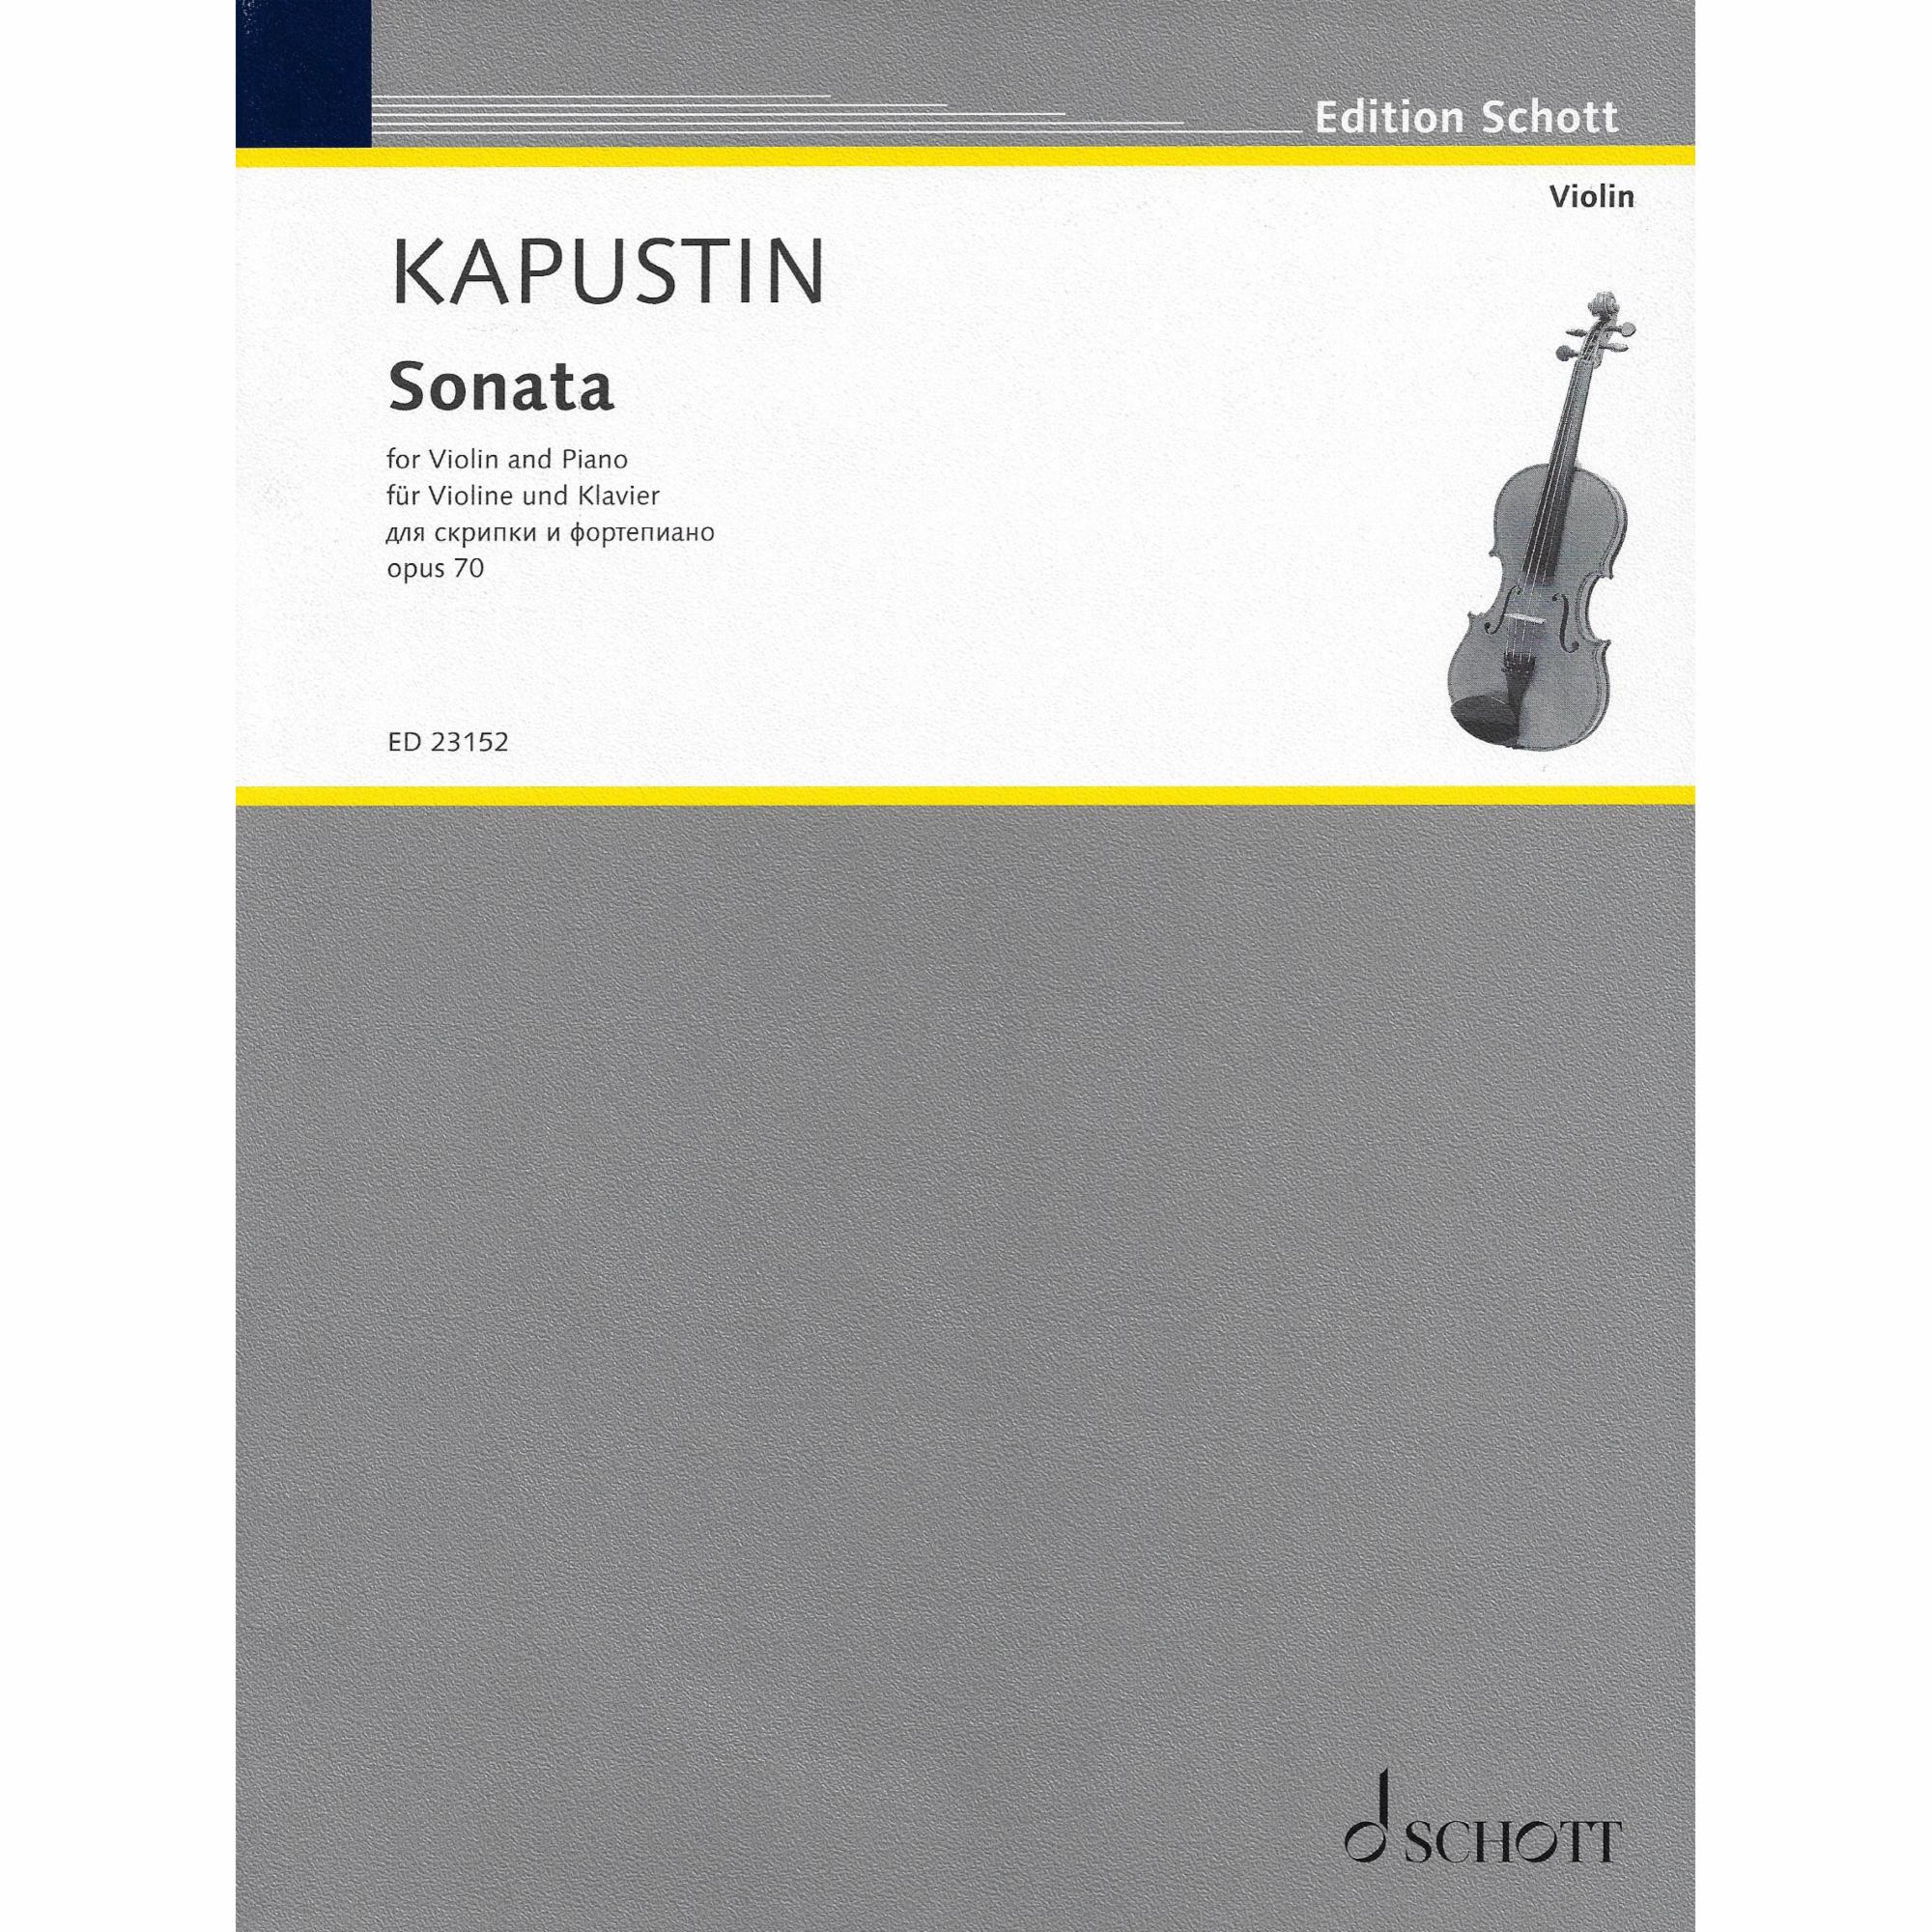 Kapustin -- Sonata, Op. 70 for Violin and Piano